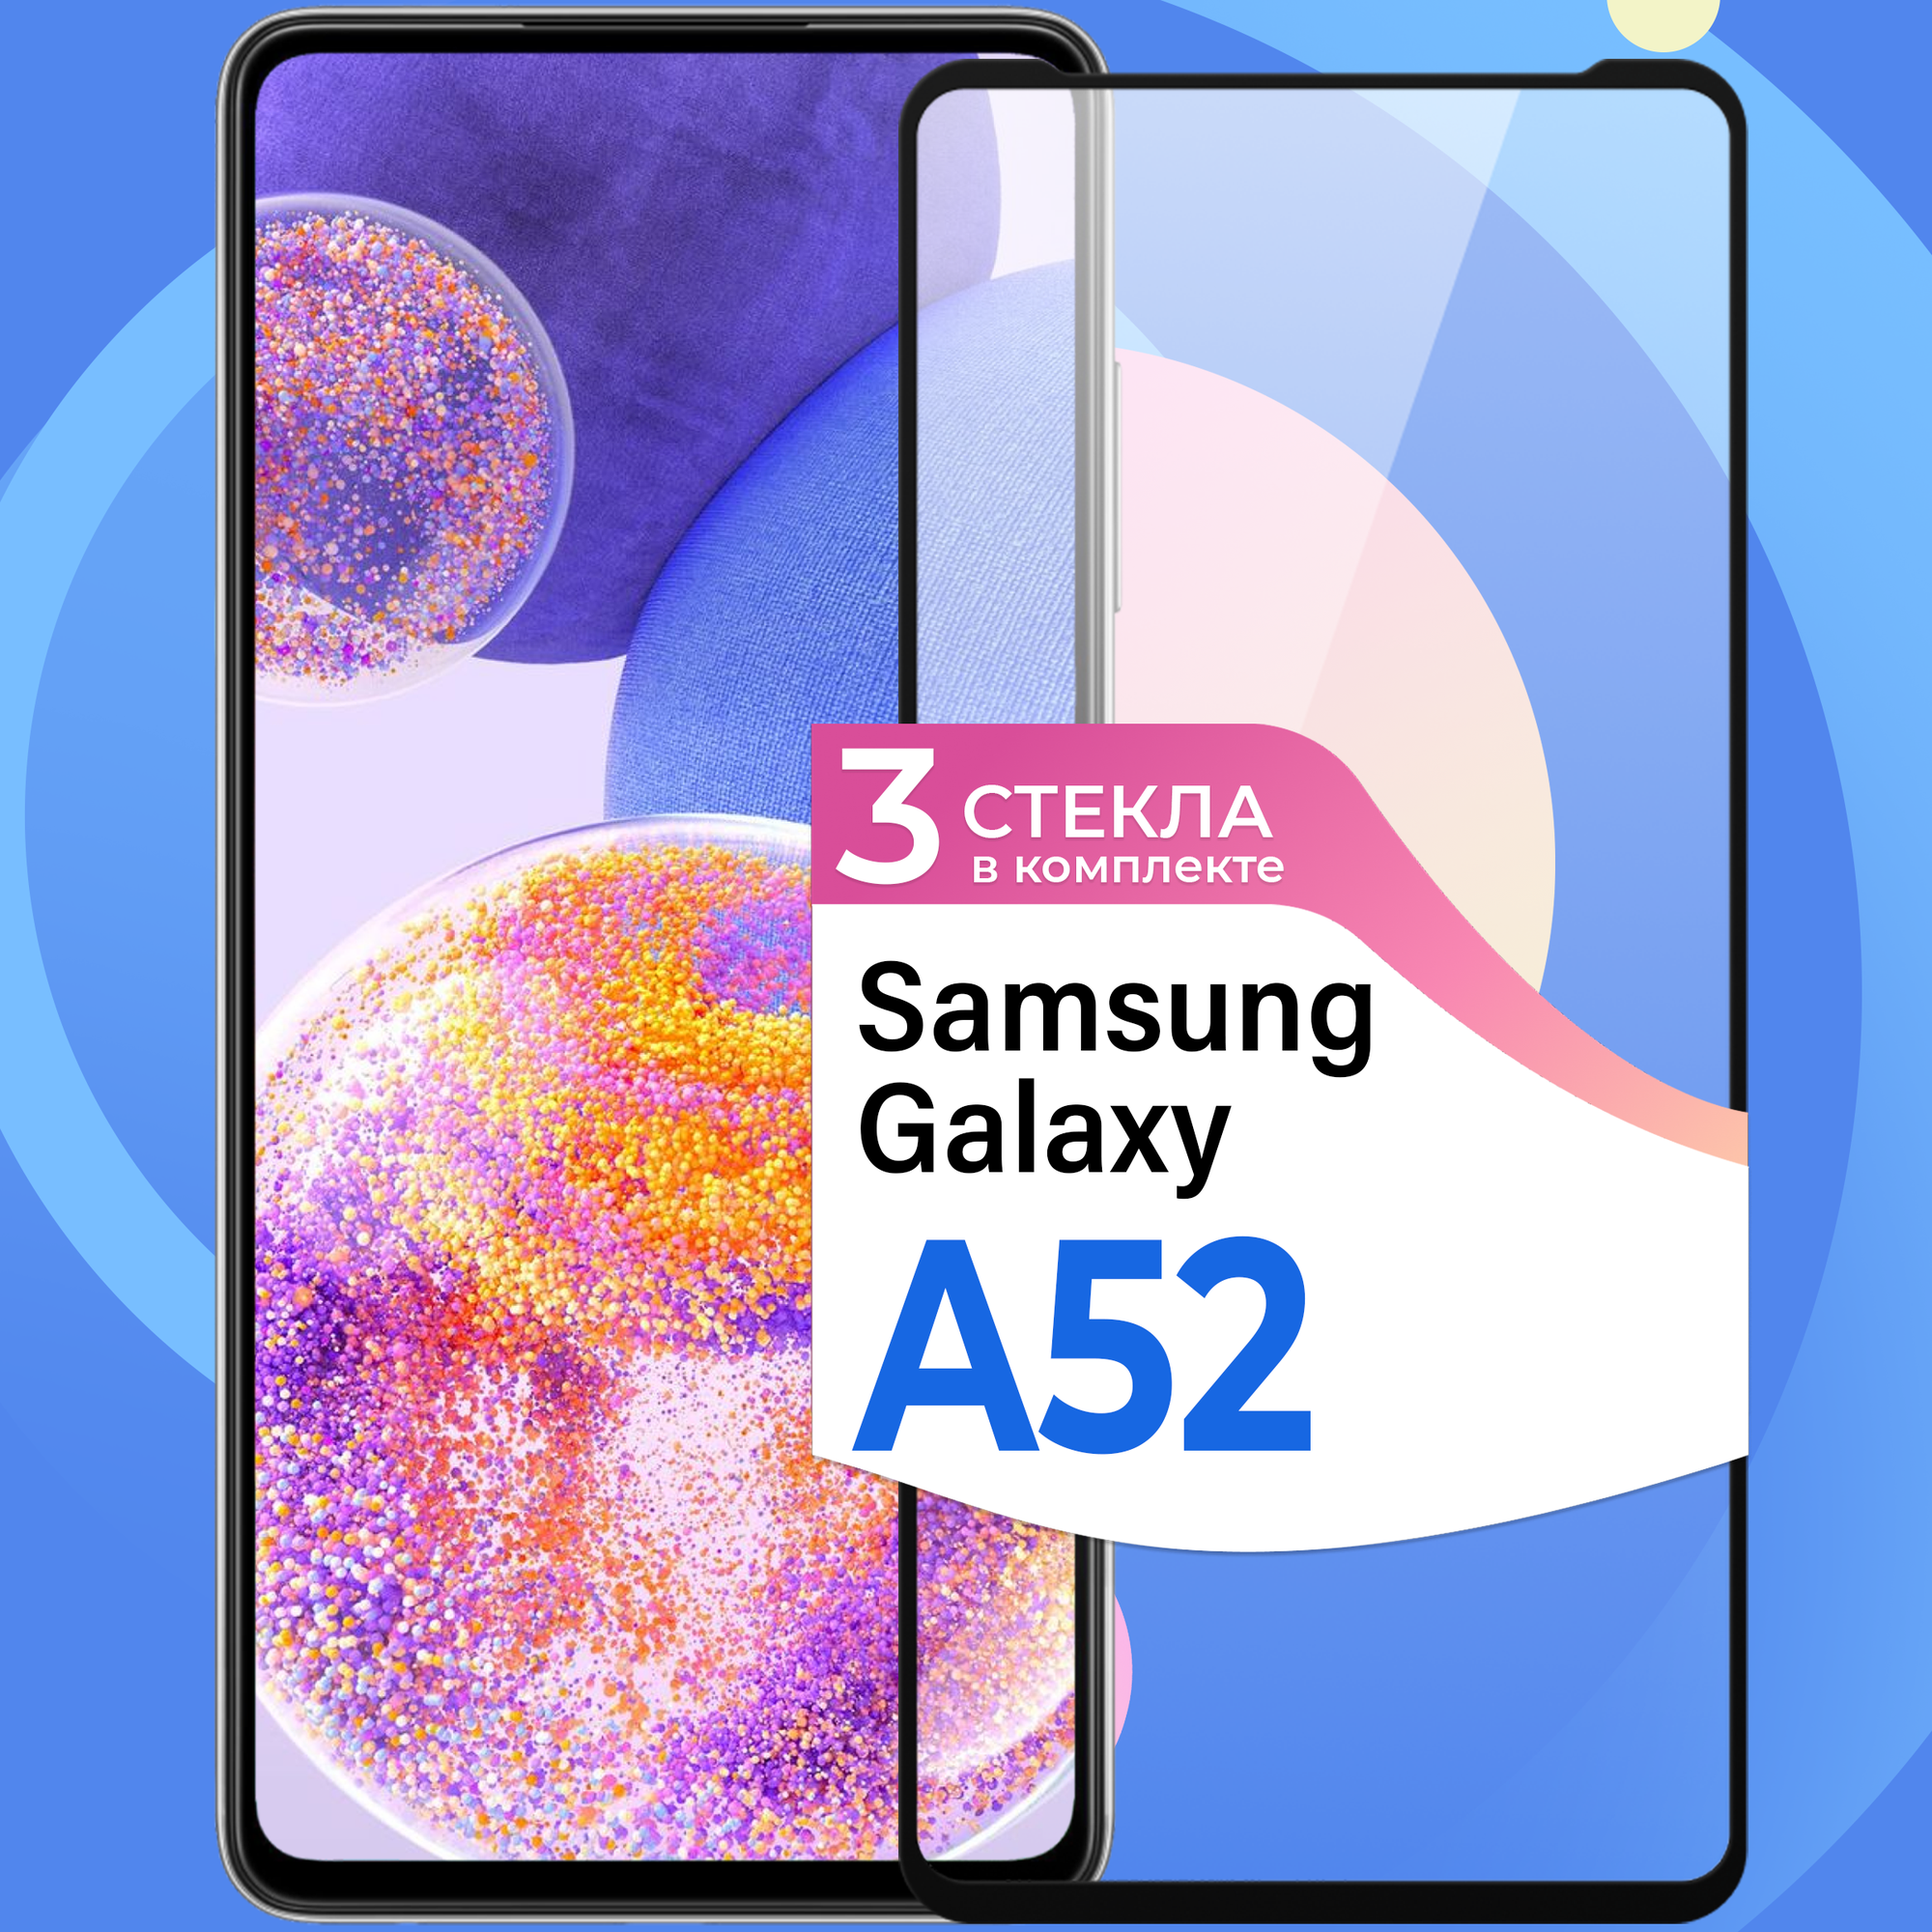 Комплект 2 шт. Противоударное стекло для смартфона Samsung Galaxy A52 / Защитное стекло с олеофобным покрытием на телефон Самсунг Галакси А52